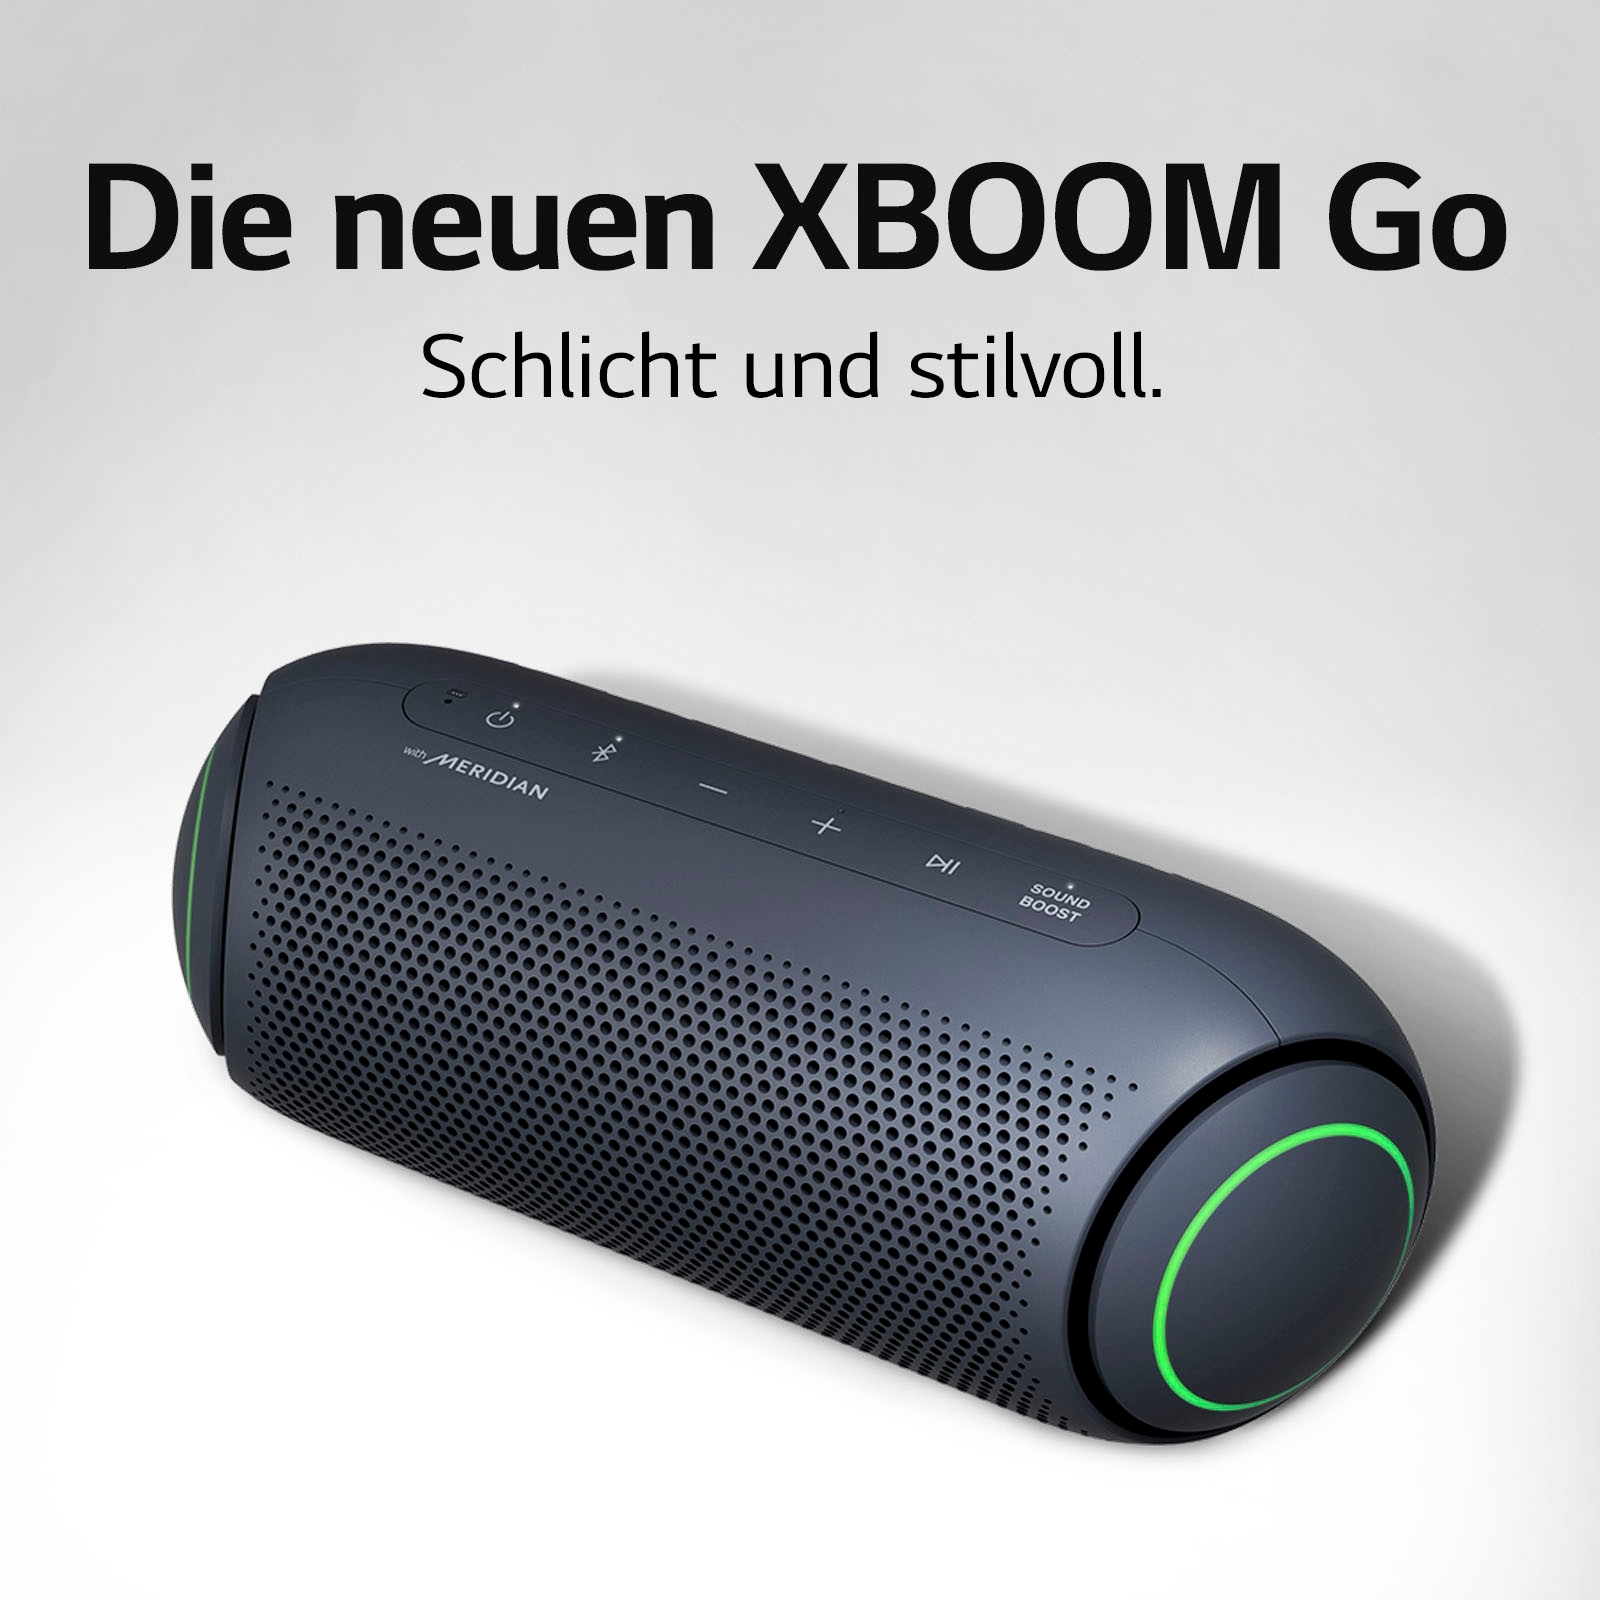 LG Bluetooth-Lautsprecher »XBOOM Go PL5«, Multipoint-Anbindung auf Raten  bestellen